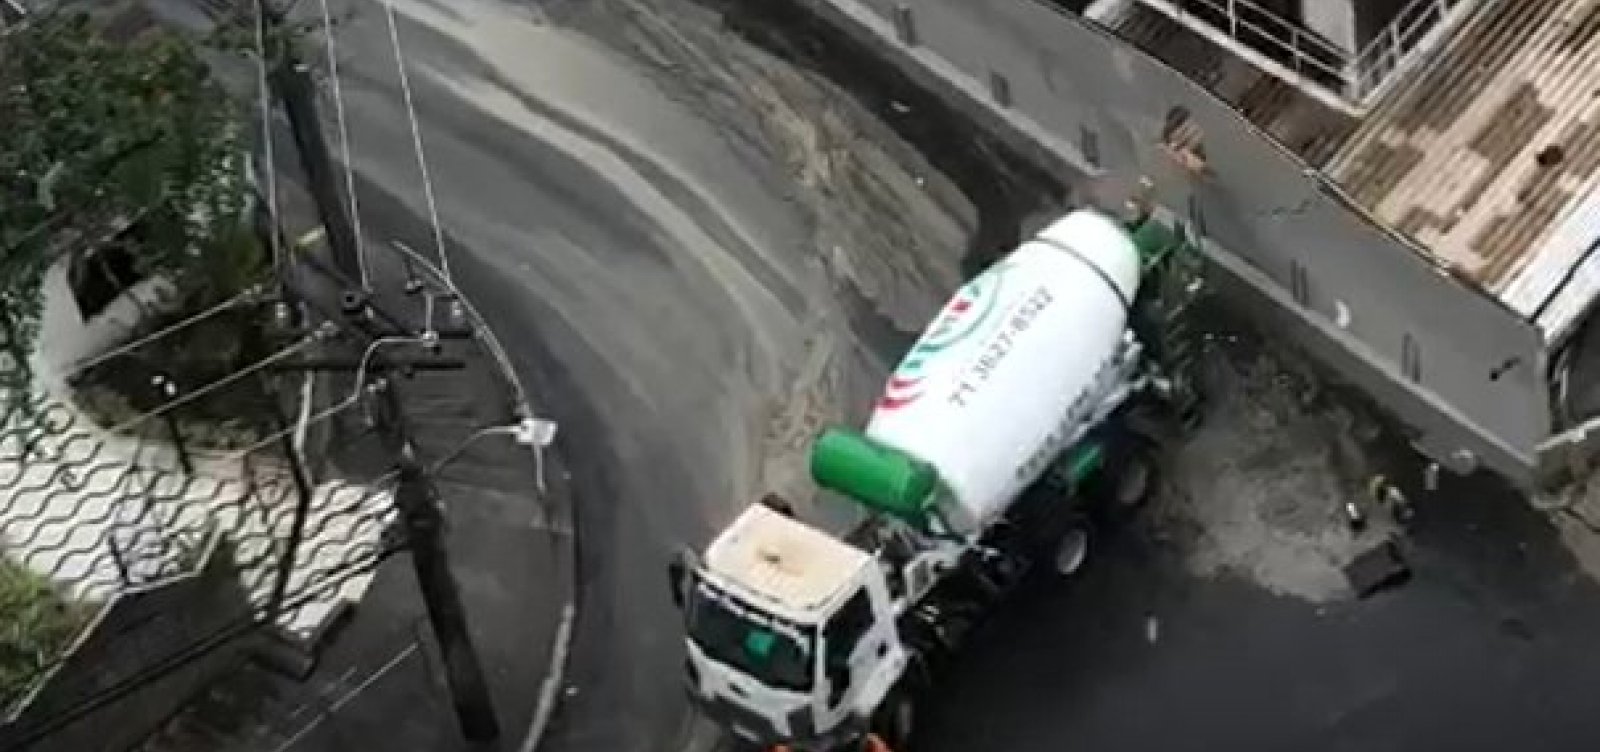 Motorista de caminhão betoneira perde controle e atinge muro de mercado na Barra 